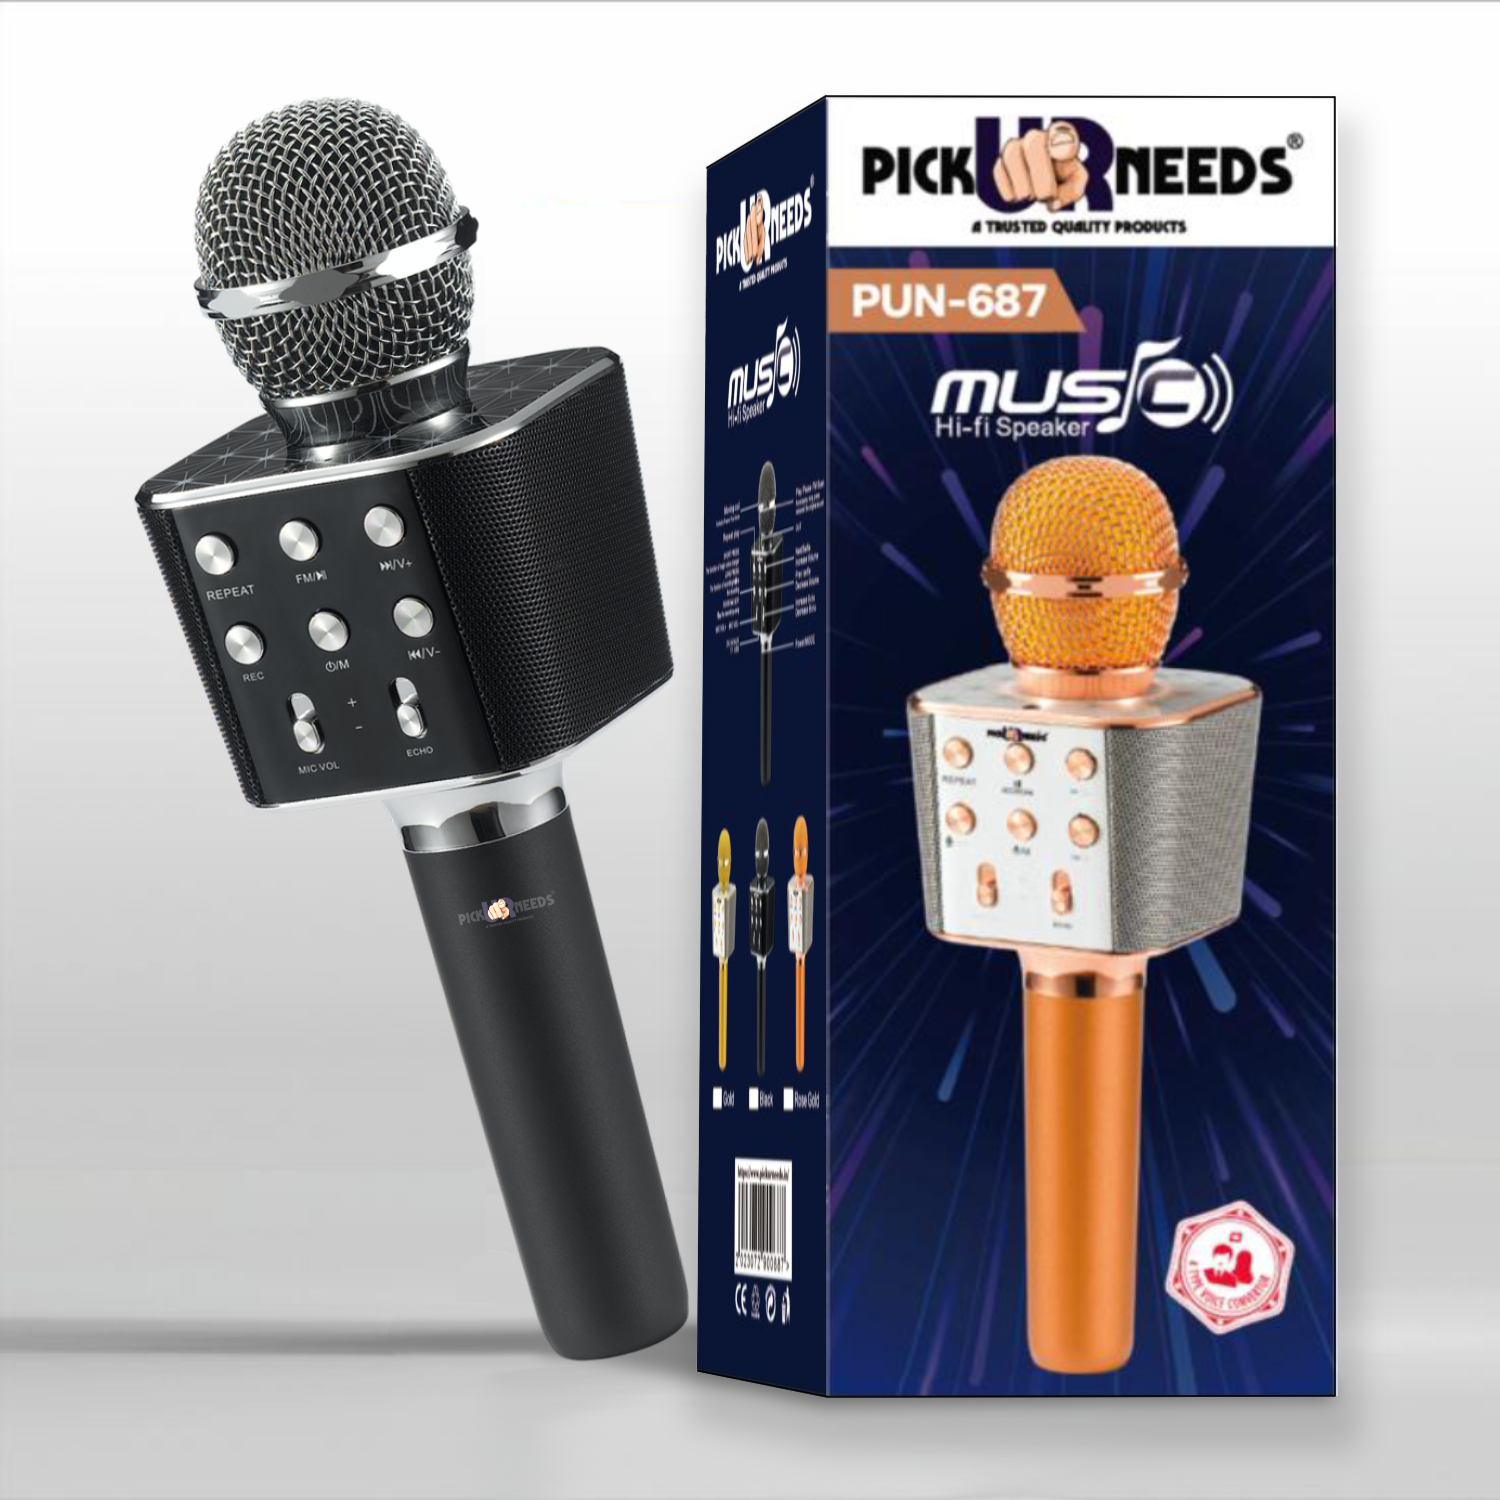 Wireless microphone bluetooth karaoke speaker, CATEGORIES \ House \ Others